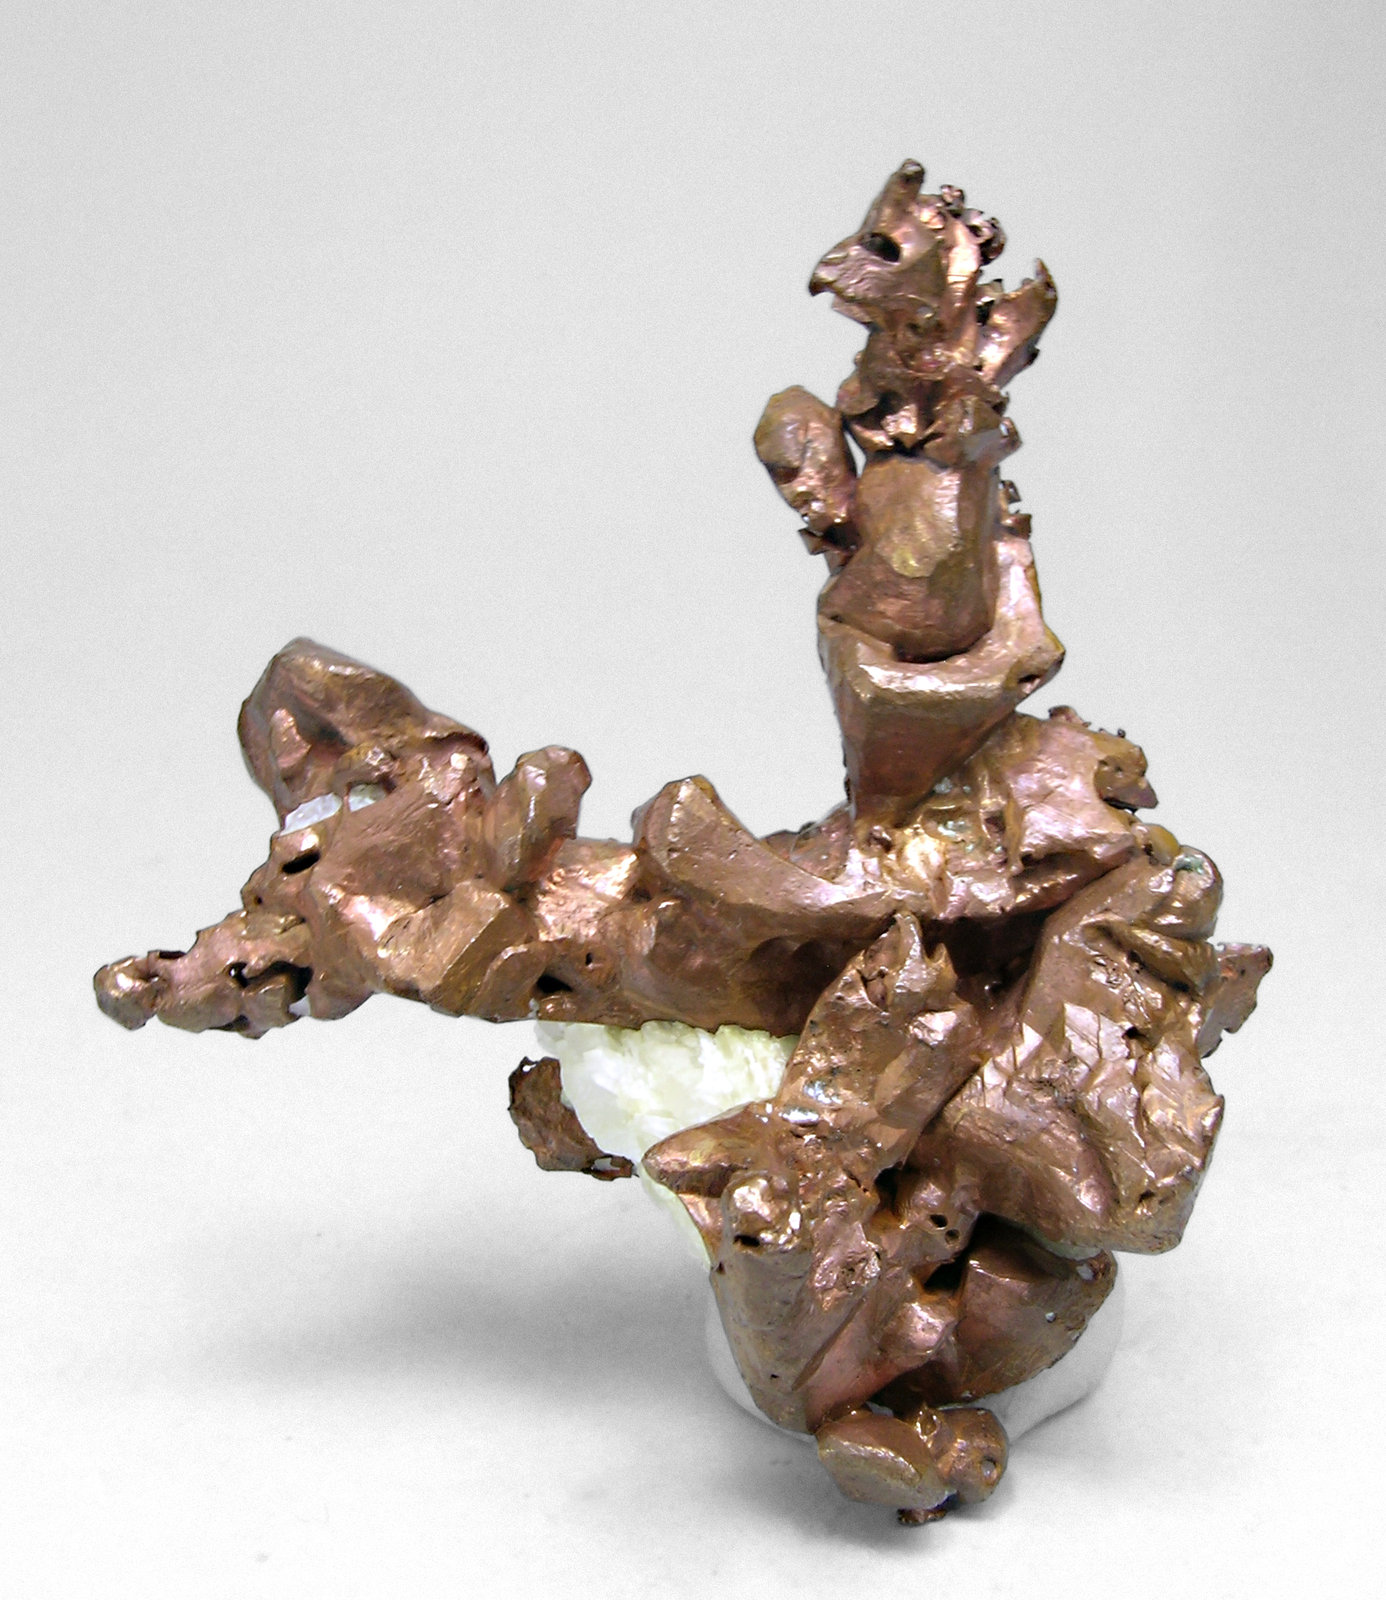 specimens/s_imagesM6/Copper-AE66M6f.jpg